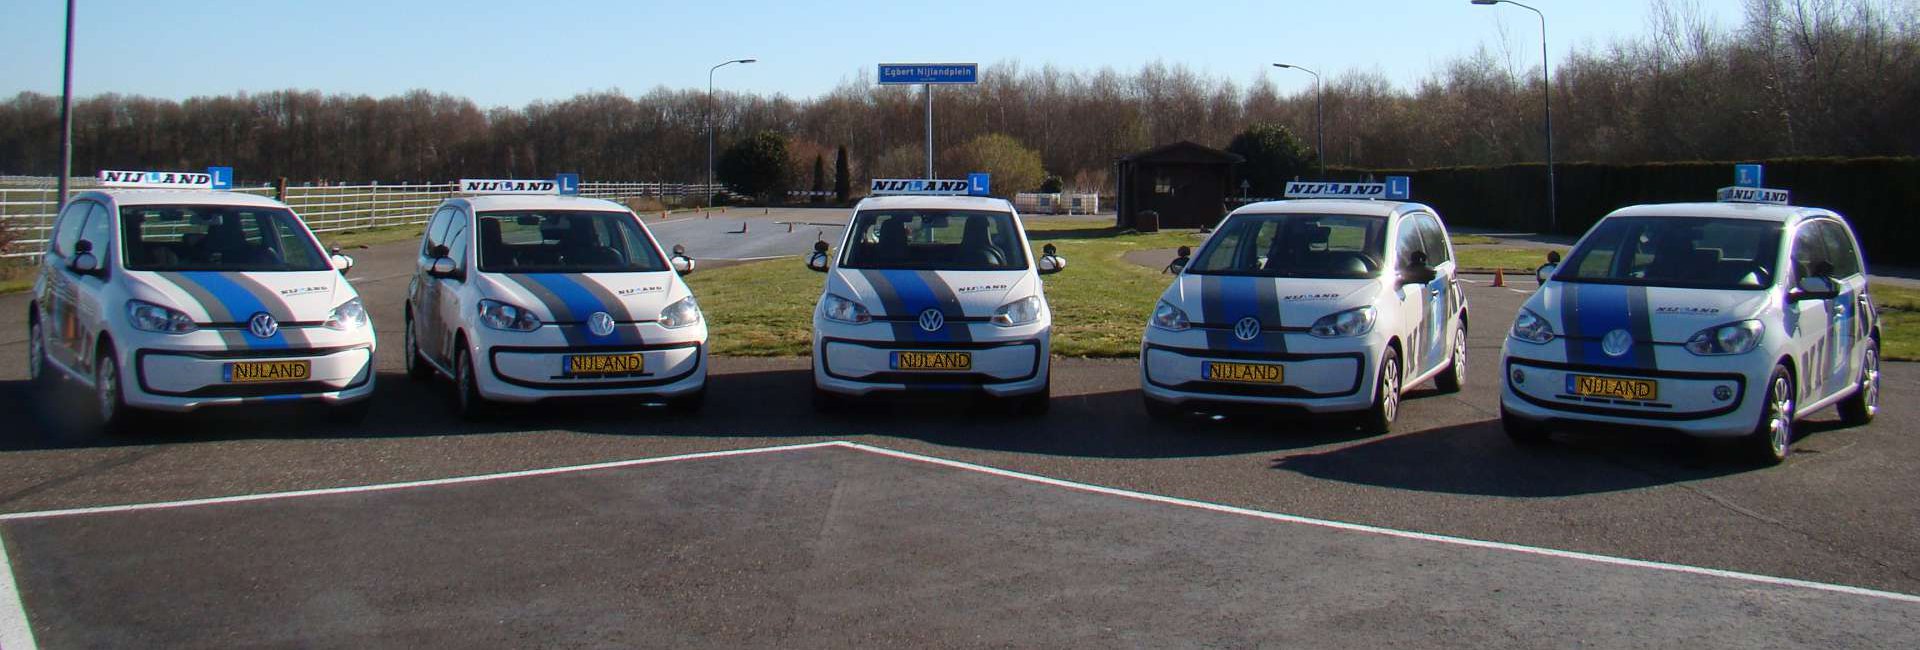 Nijland verkeersschool - rijles voor de gemeente Emmen - Wagenpark Nijland Verkeersscholen / alleen VW Ups